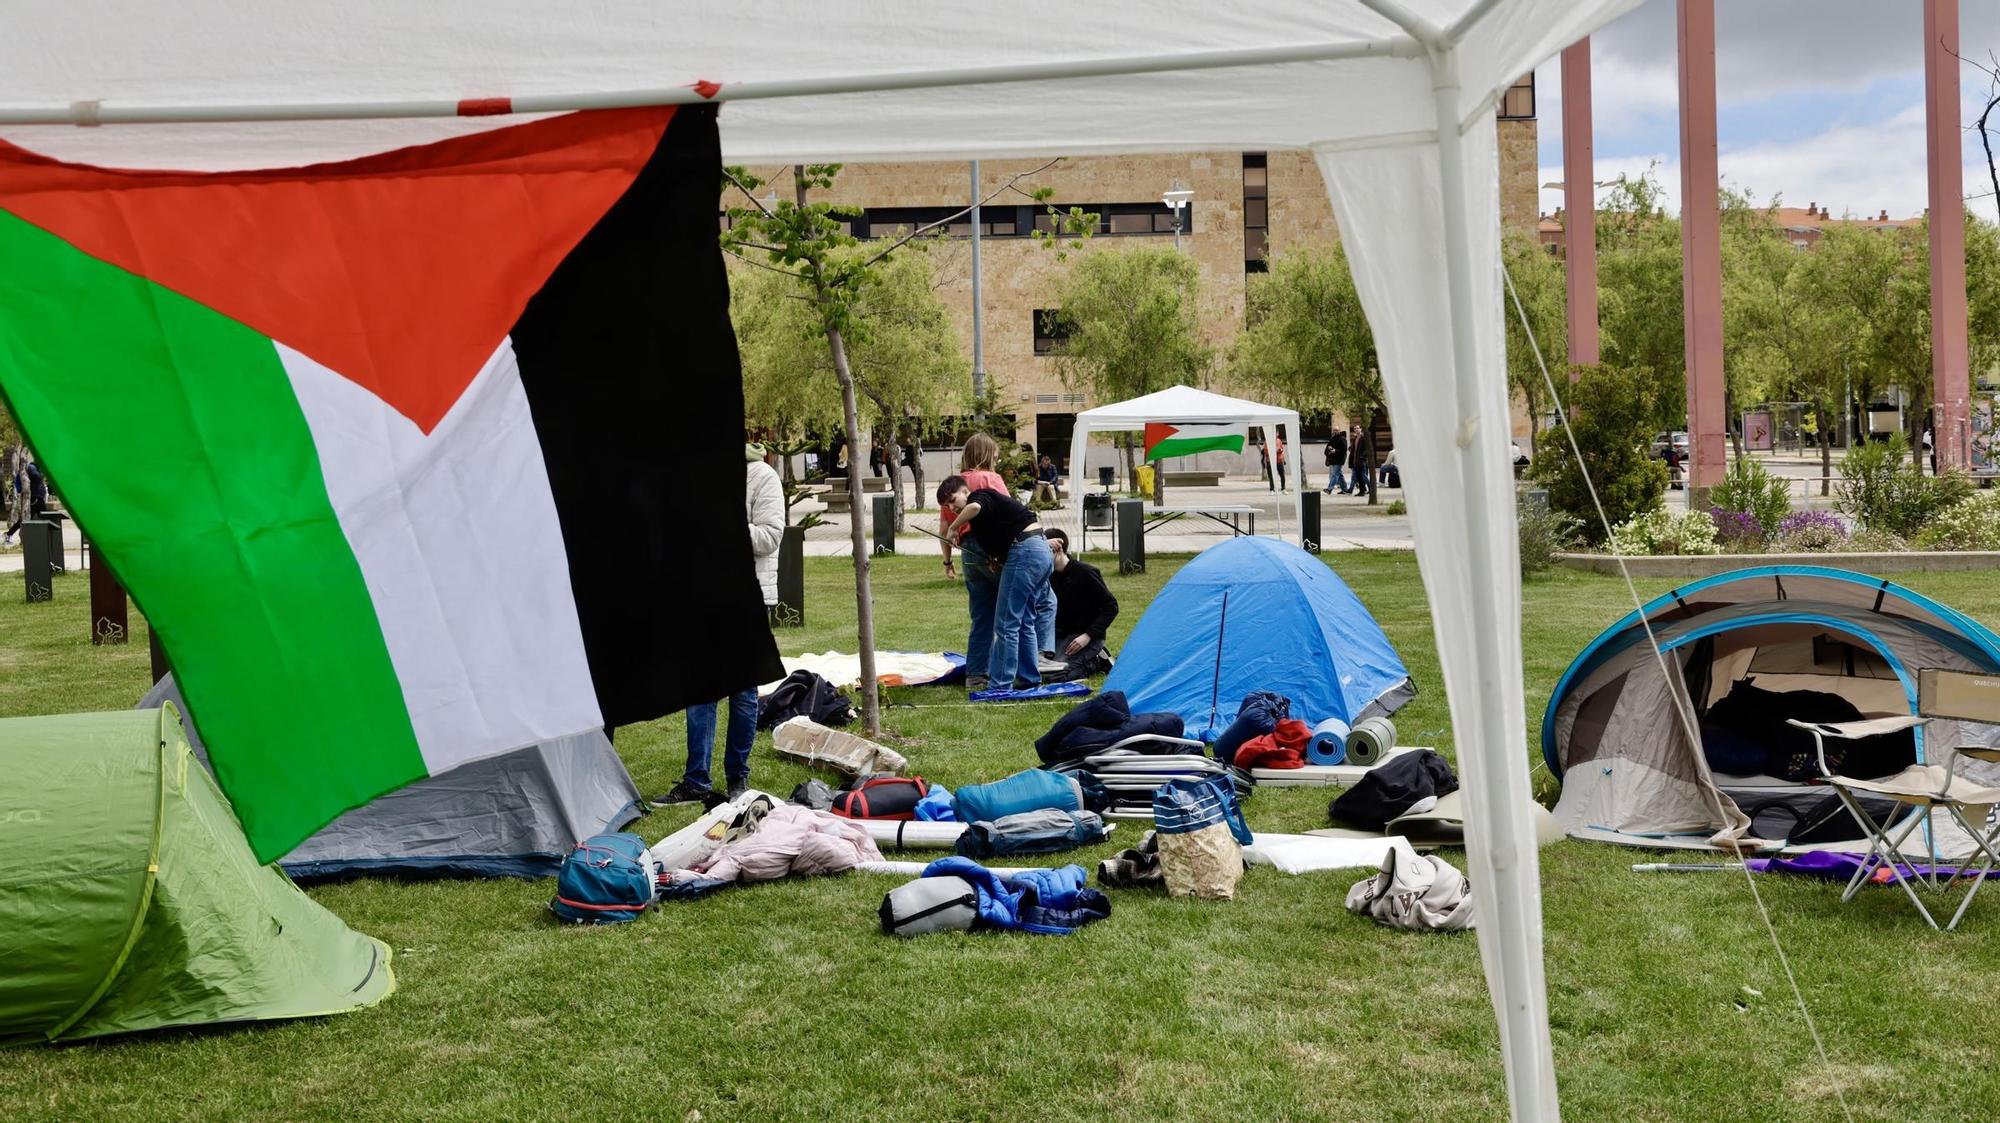 GALERÍA: Estudiantes de la USAL acampan para denunciar el genocidio contra Palestina